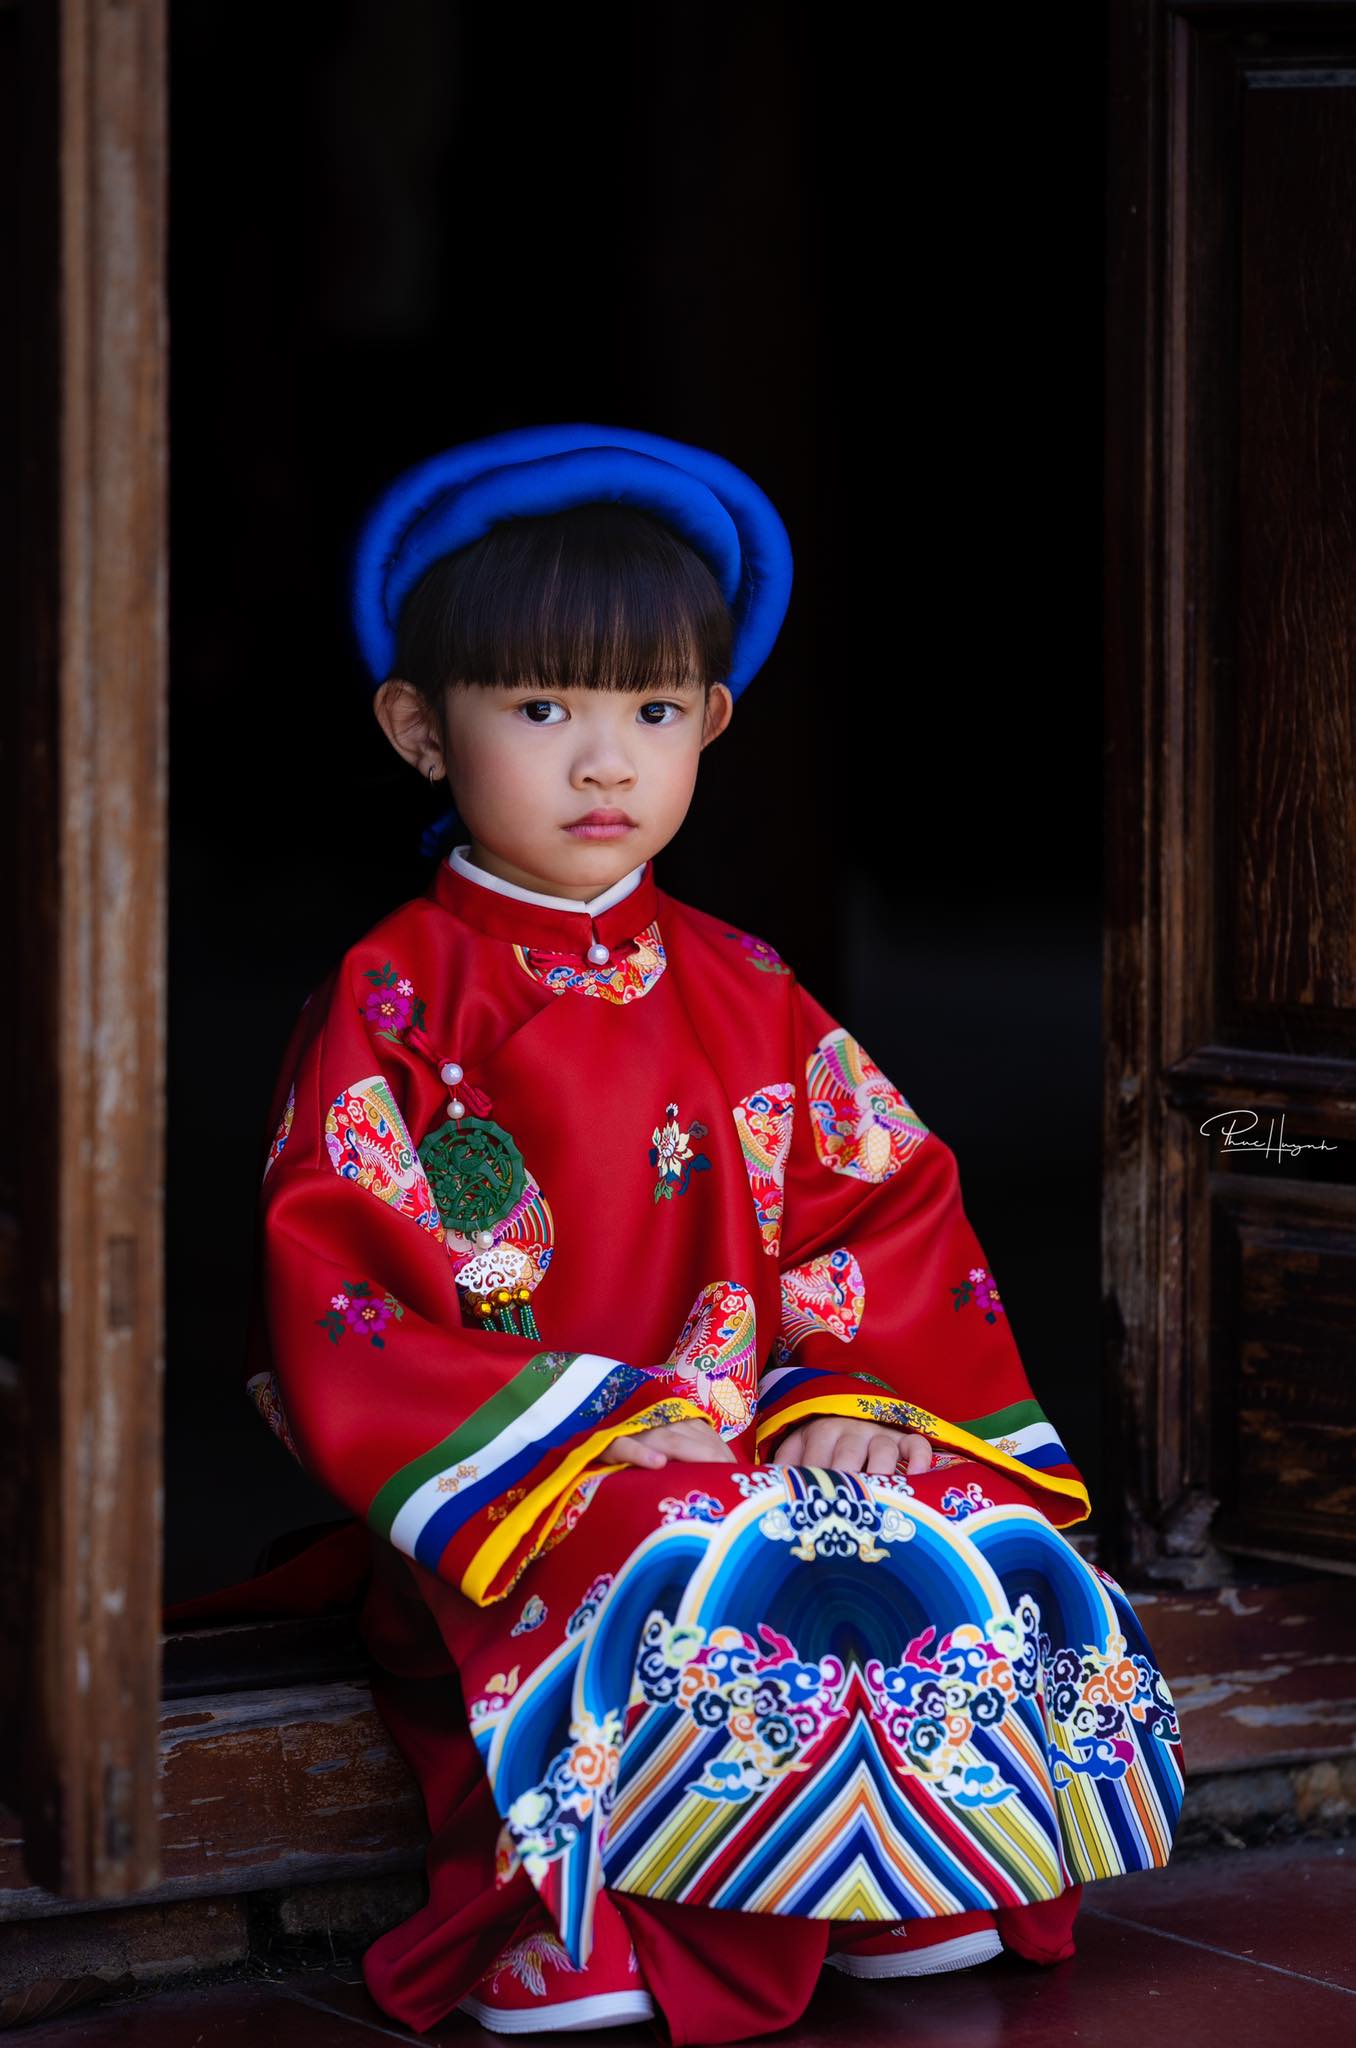 Mê đắm cổ phục, mẹ thiết kế cho con gái loạt áo dài trang trọng, quyền quý, nuôi dưỡng tình yêu và lưu giữ nét truyền thống dân tộc - Ảnh 6.